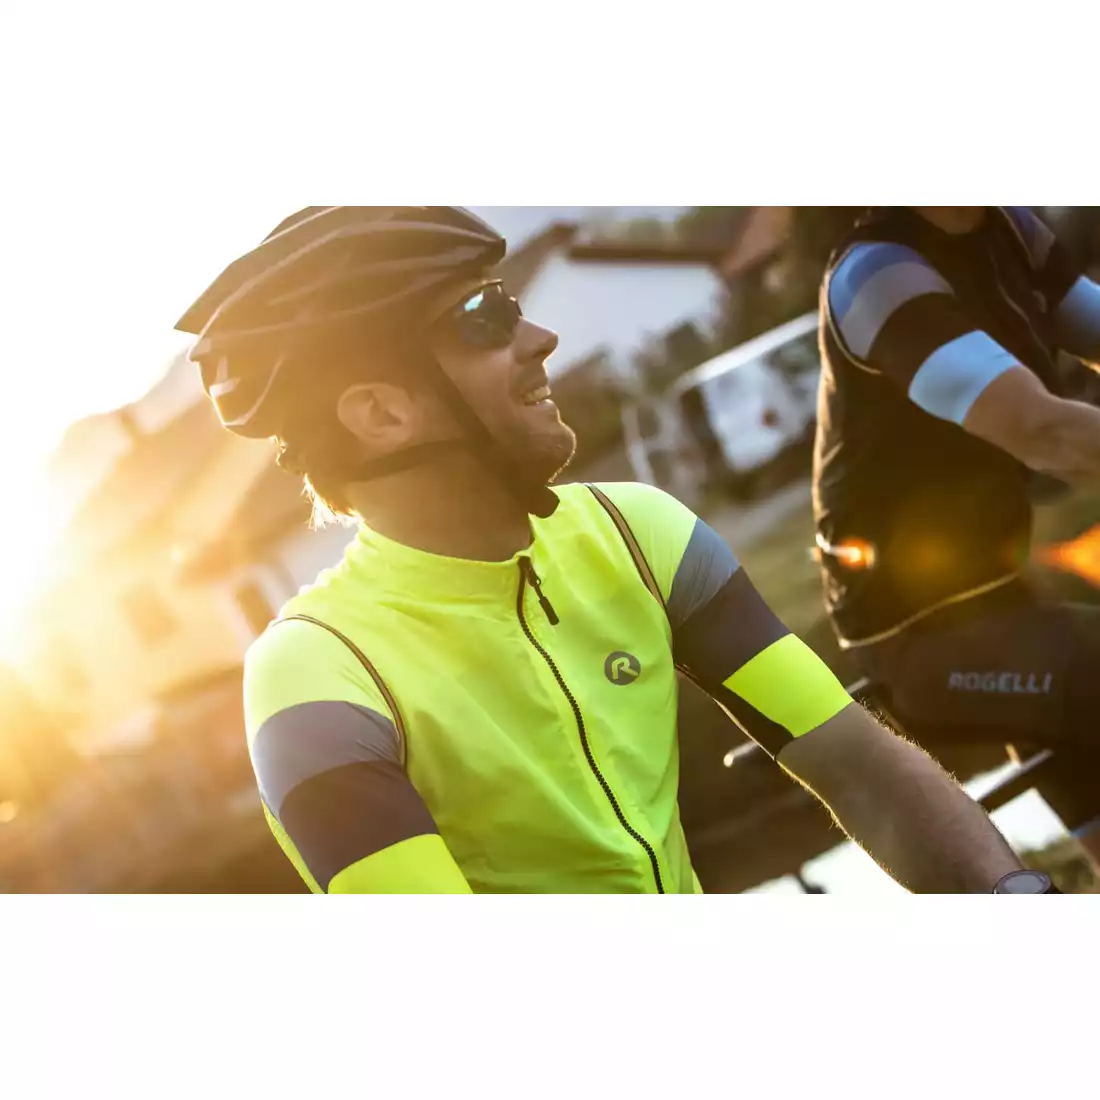 Rogelli CORE vestă de ciclism pentru bărbați, galben fluor